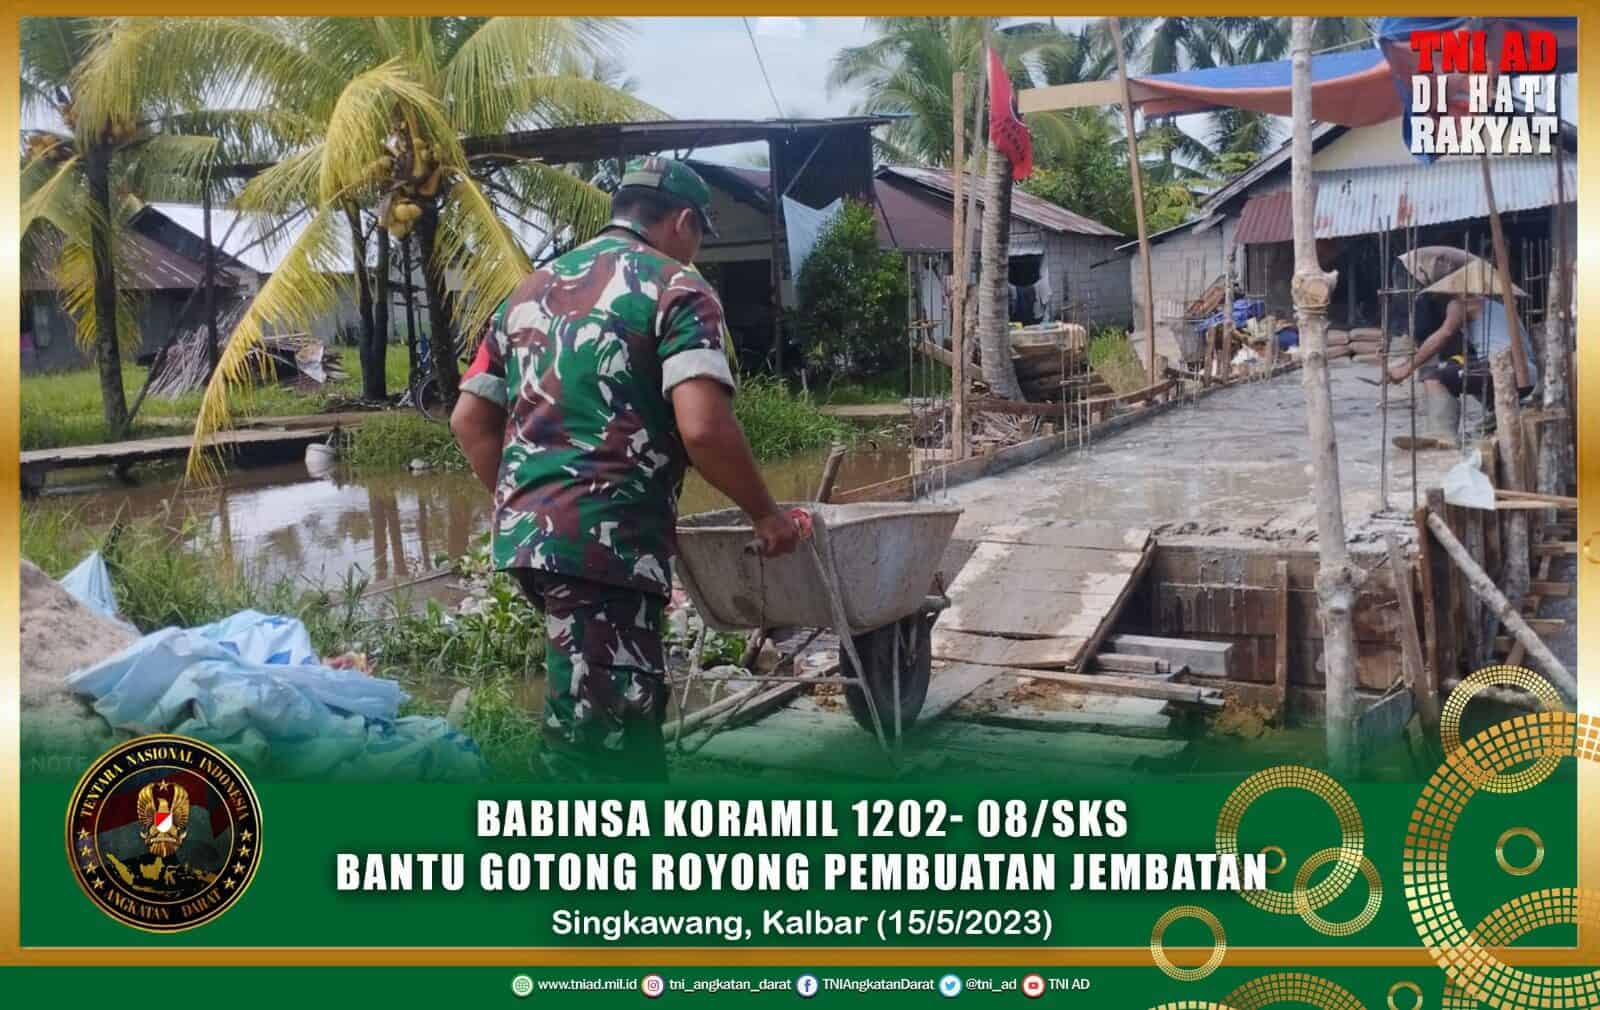 Babinsa Koramil 1202- 08/Sks Bantu Gotong Royong Pembuatan Jembatan